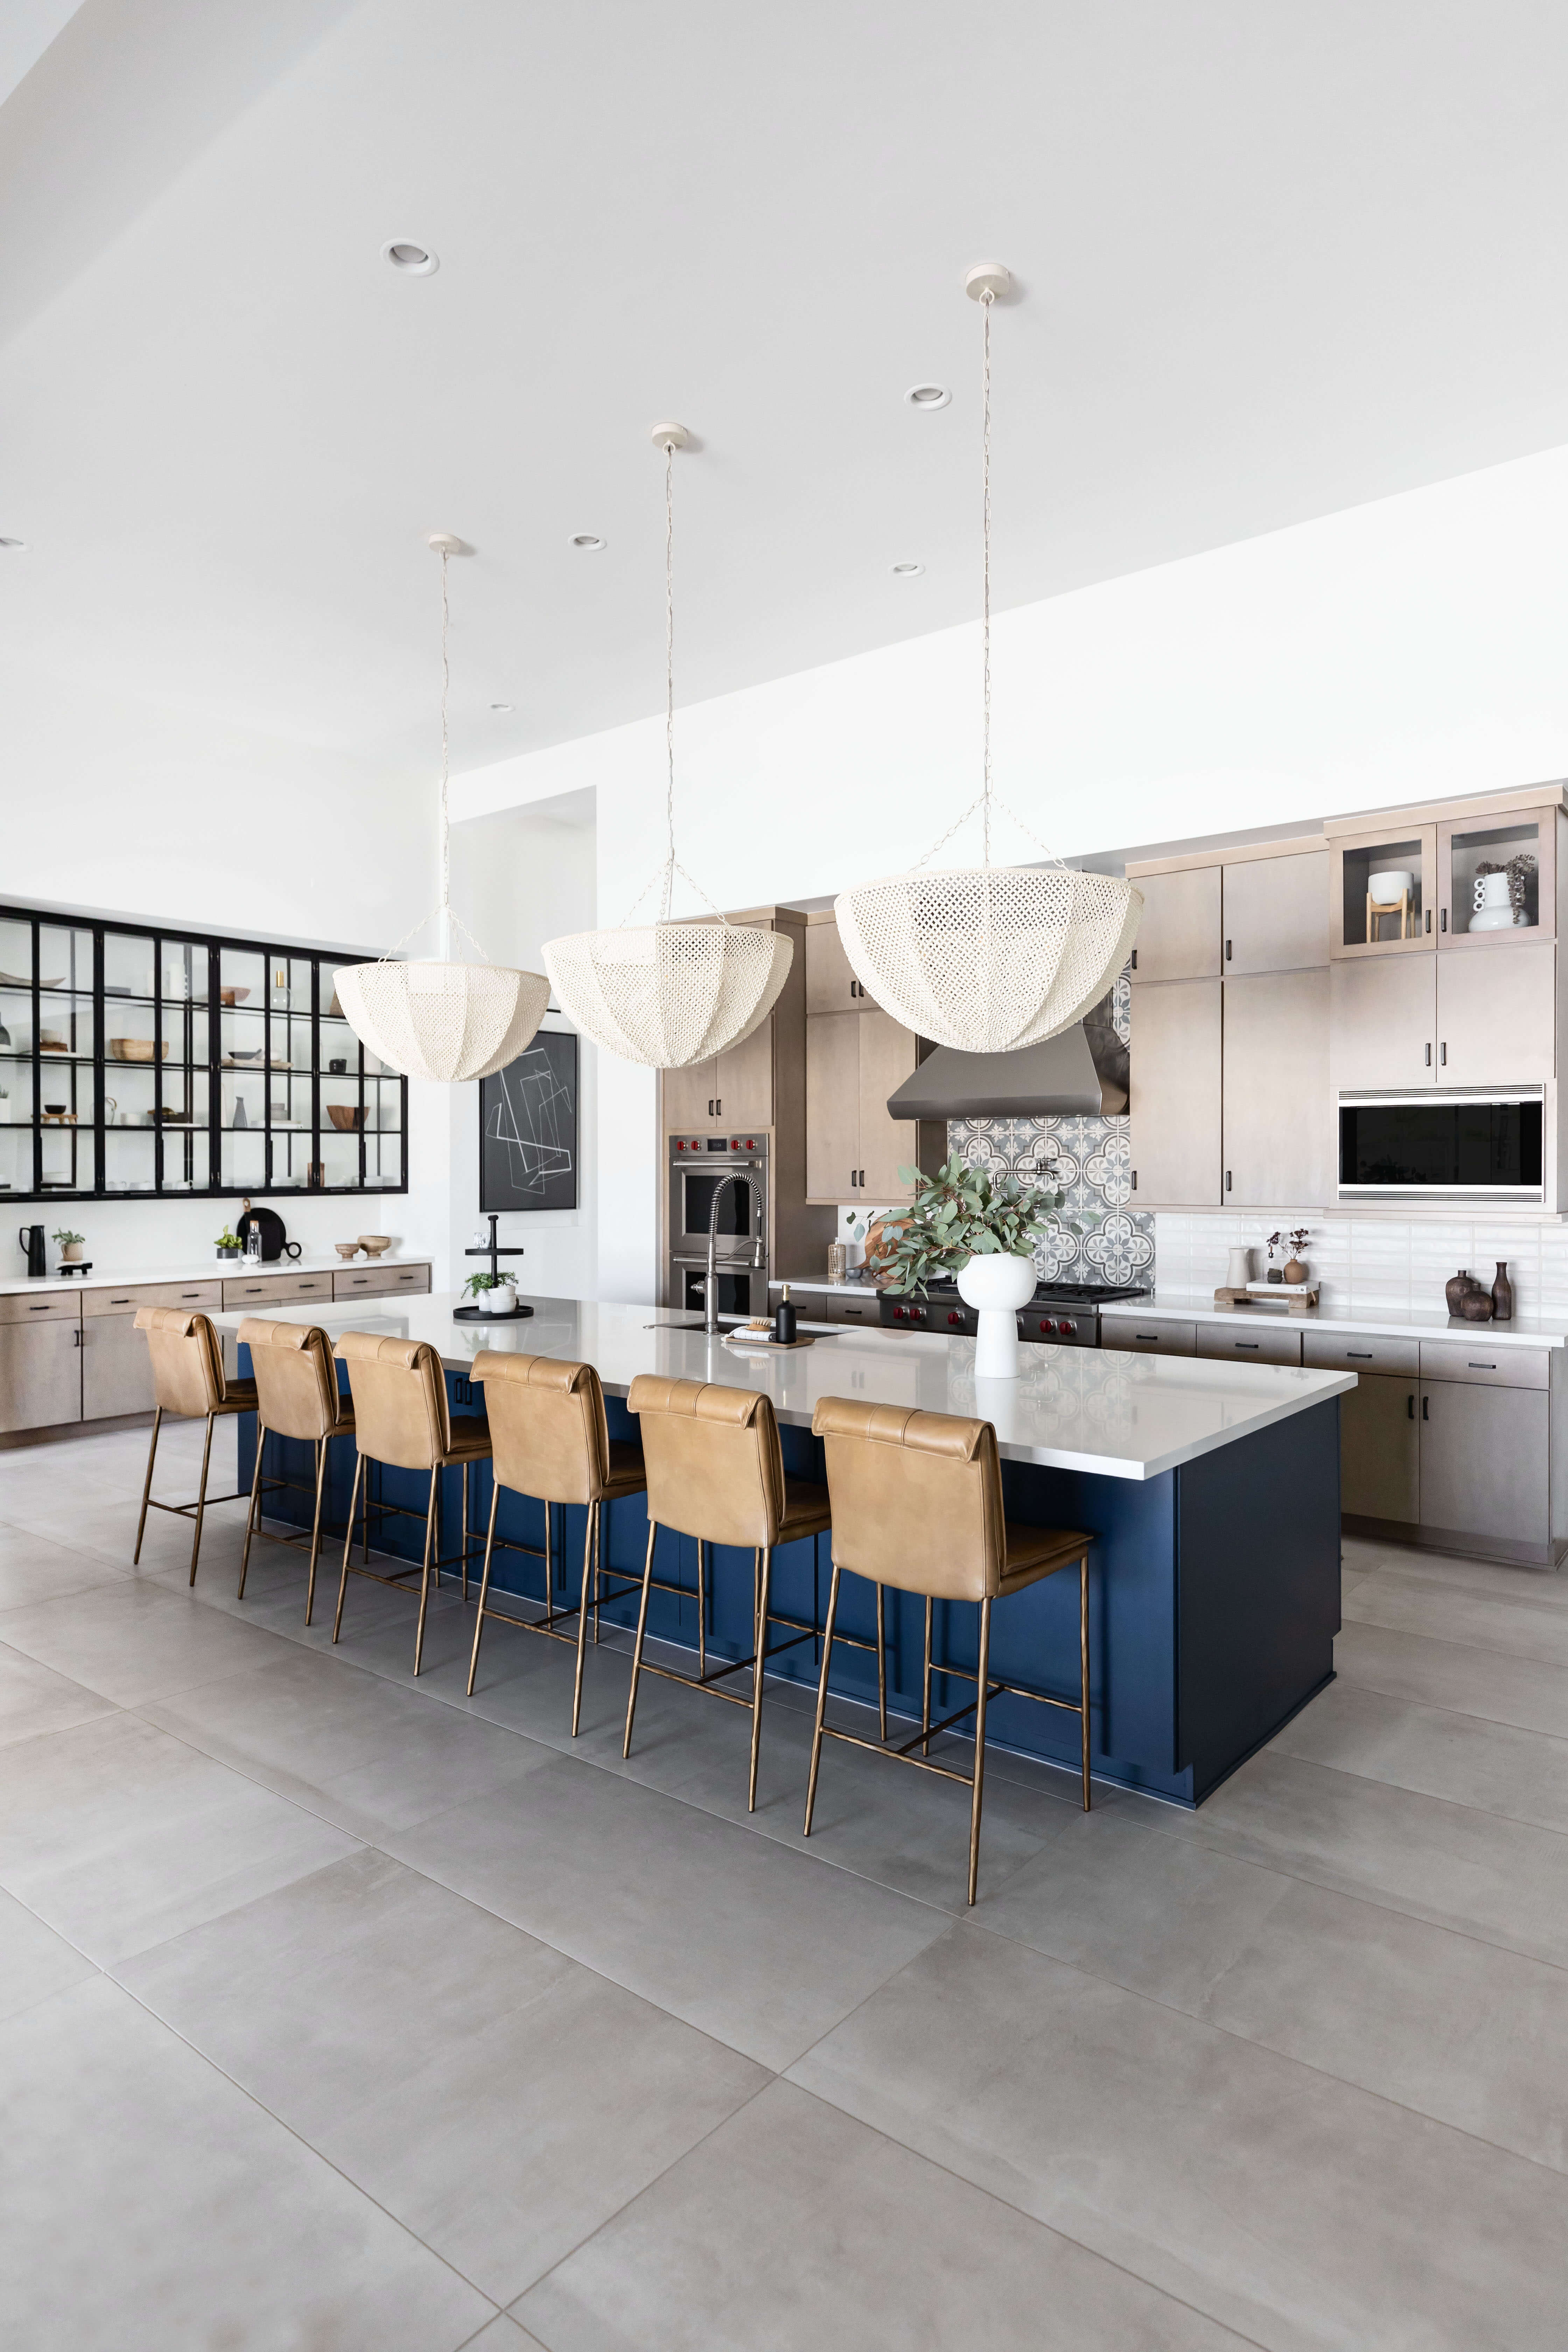 contemporary interior design kitchen scottsdale